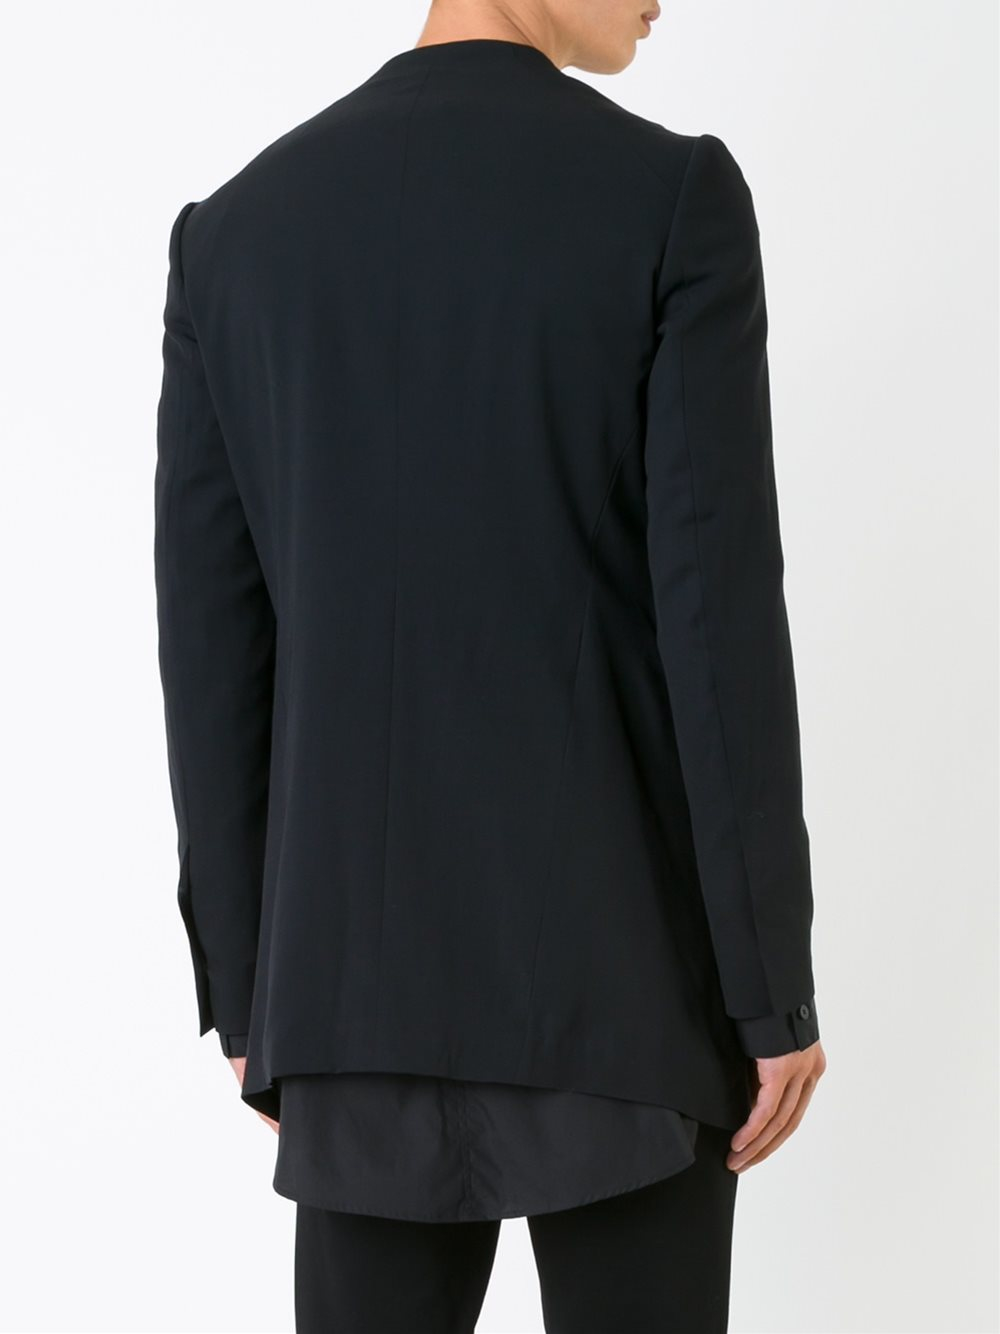 Julius Collarless Blazer Jacket in Black for Men - Lyst